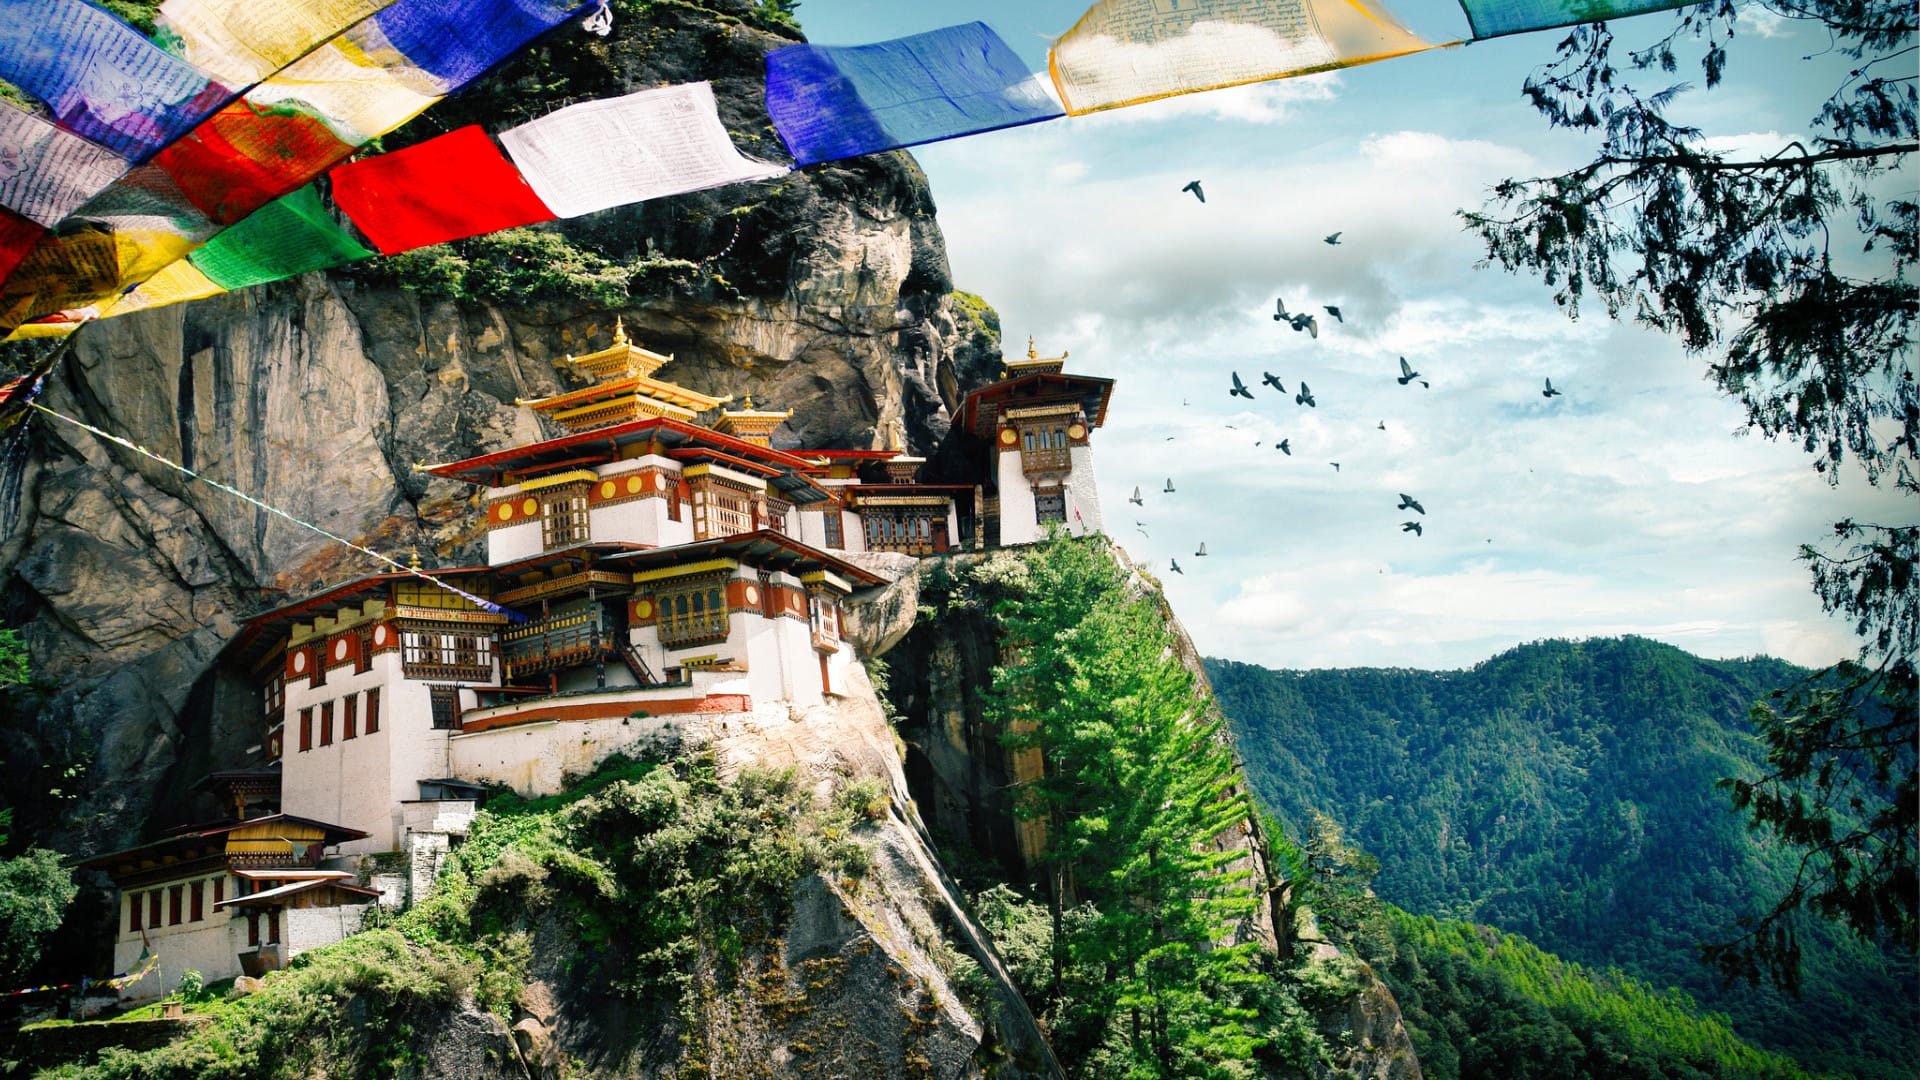 Image of Bhutan